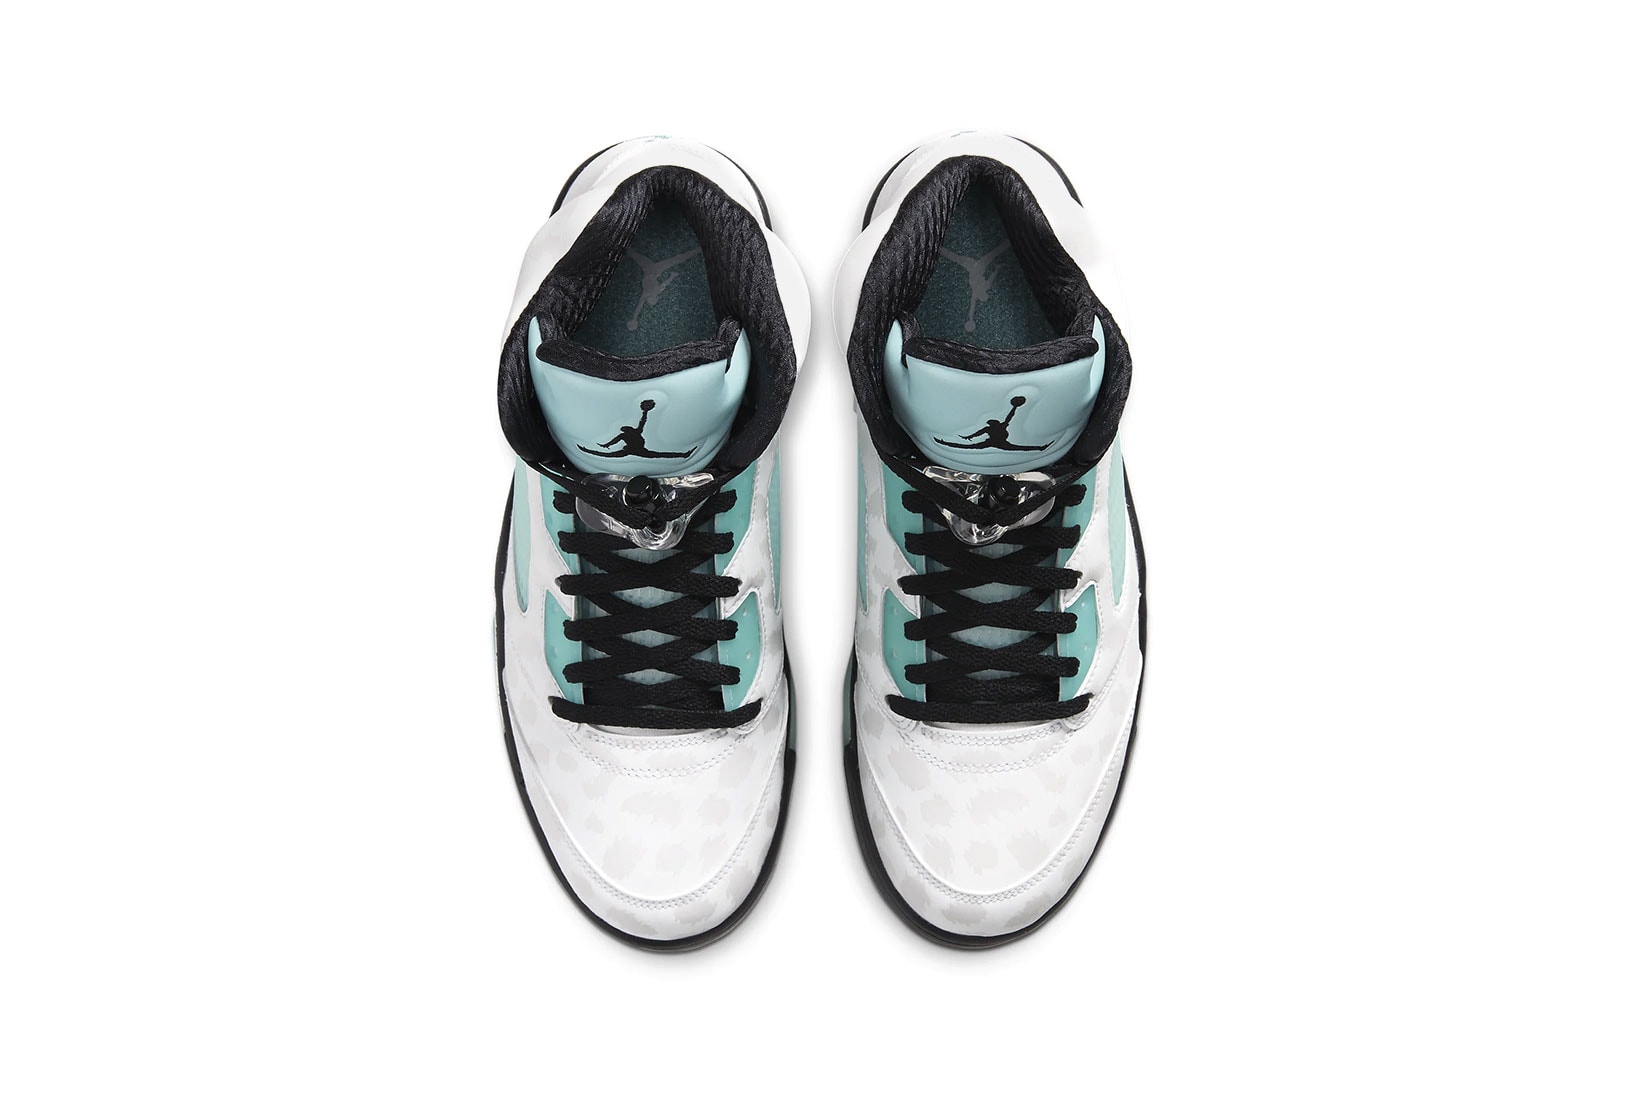 Nike Air Jordan 5 Retro 